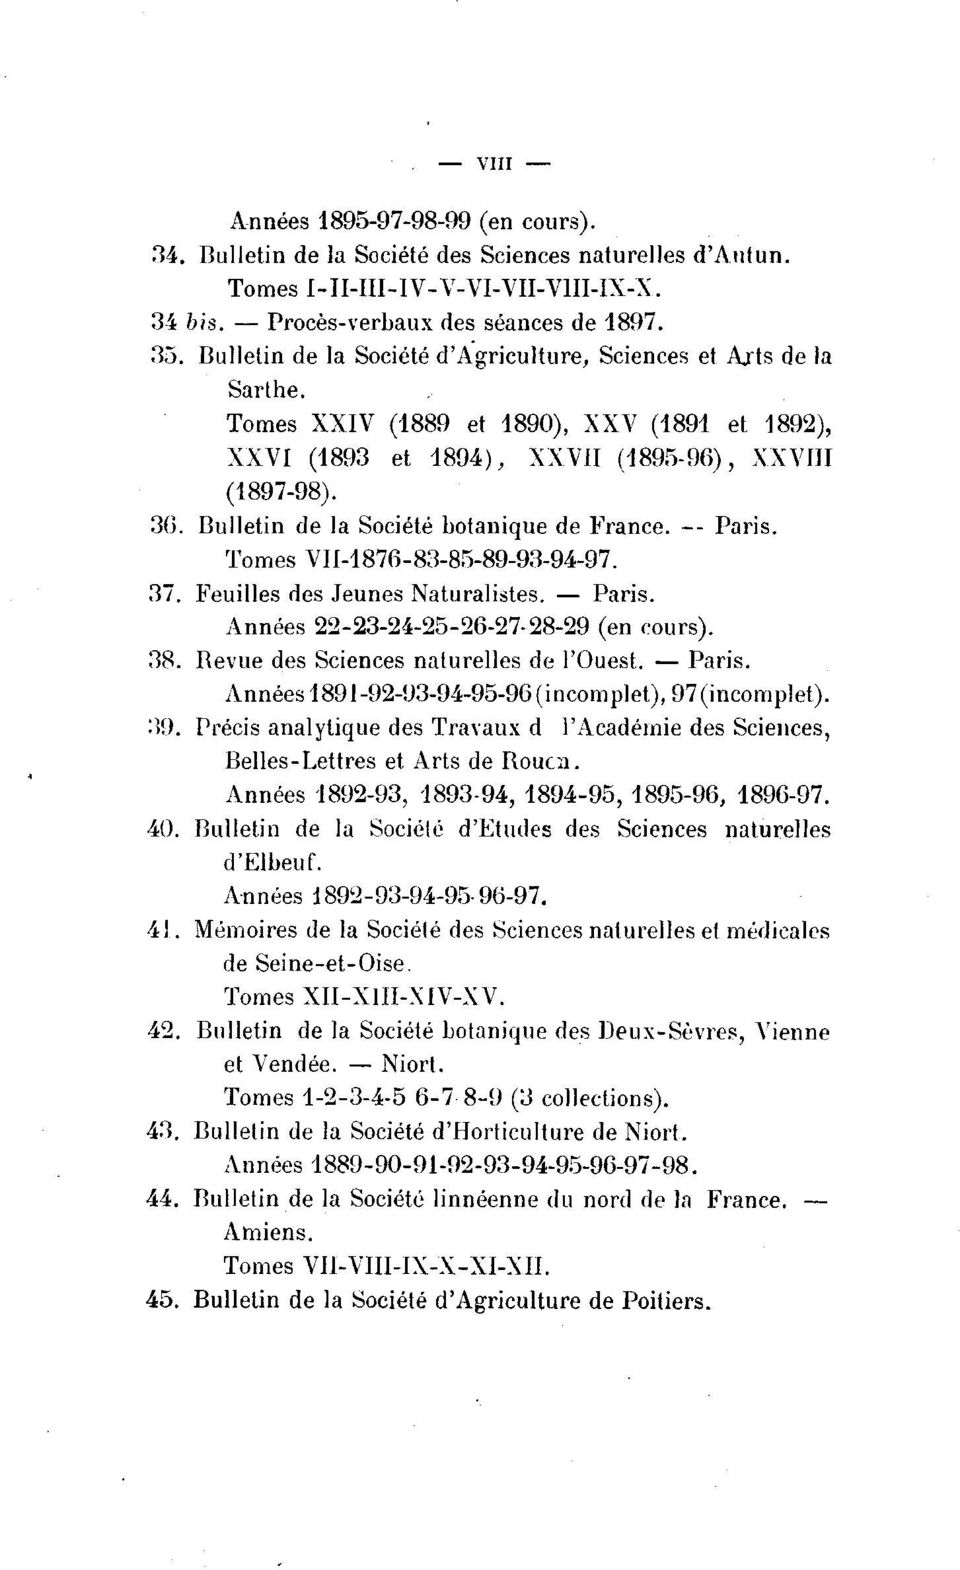 Bulletin de la Société botanique de France. -- Paris. Tomes VII-1876-83-85-89-93-94-97. 37. Feuilles des Jeunes Naturalistes. - Paris. Années 22-23-24-25-26-27-28-29 (en cours). 38.